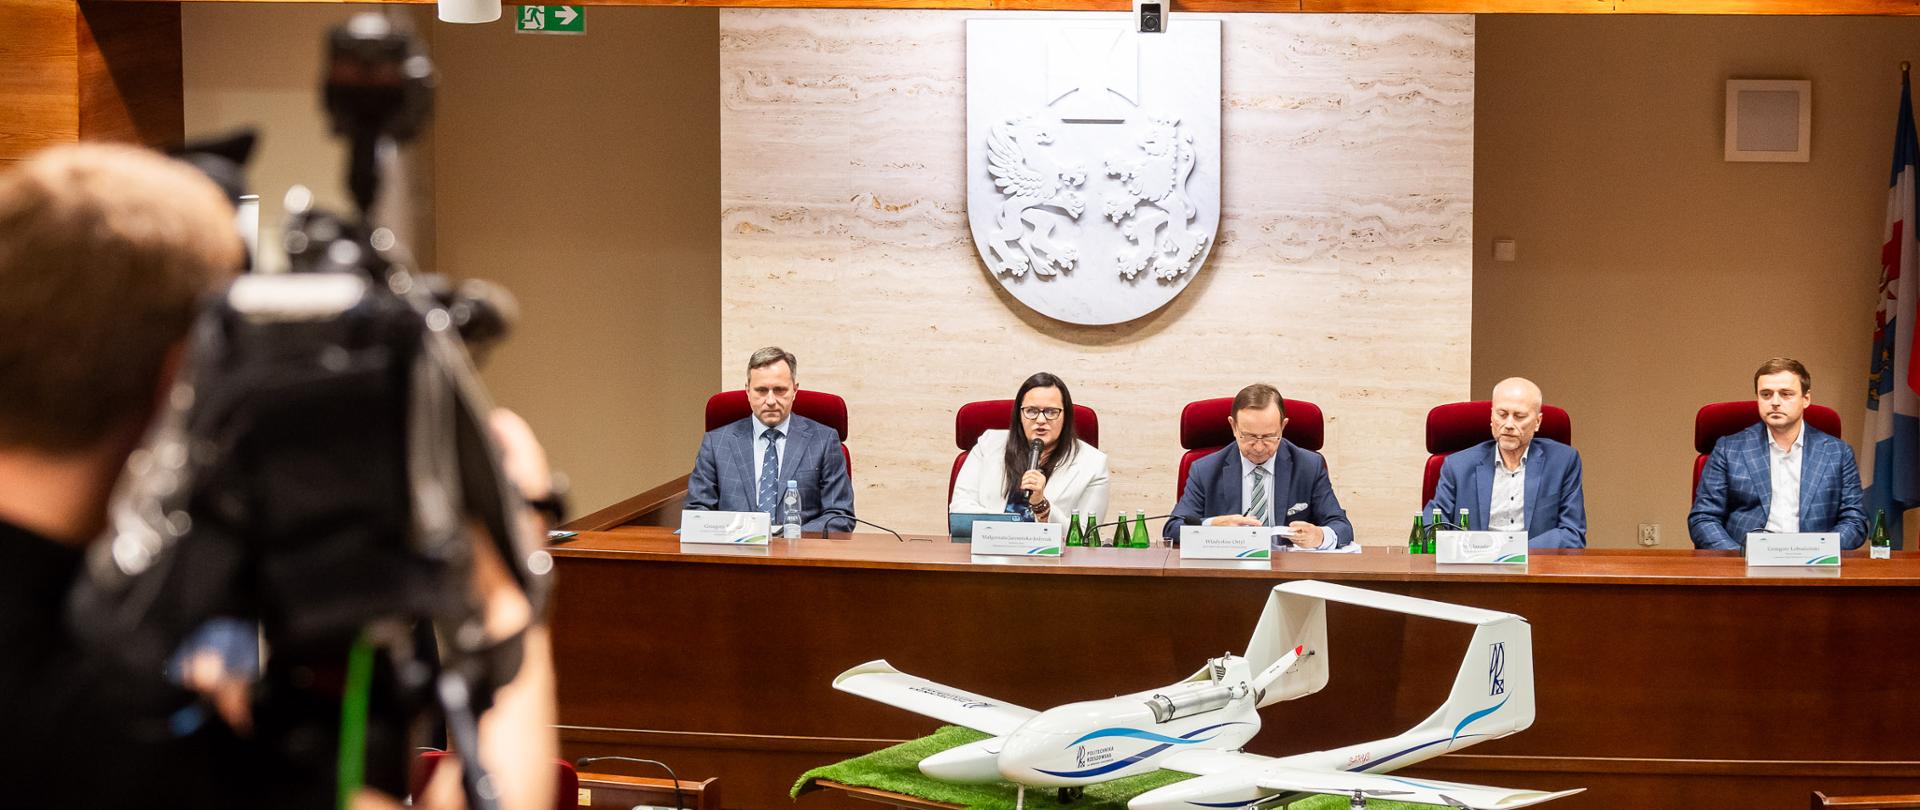 UMWP. Panel dyskusyjny "Wyskorzystanie dronów w zarządzaniu kryzysowym-przeszkody, możliwości, aspekt prawny"
fot. Michał Bosek-UMWP